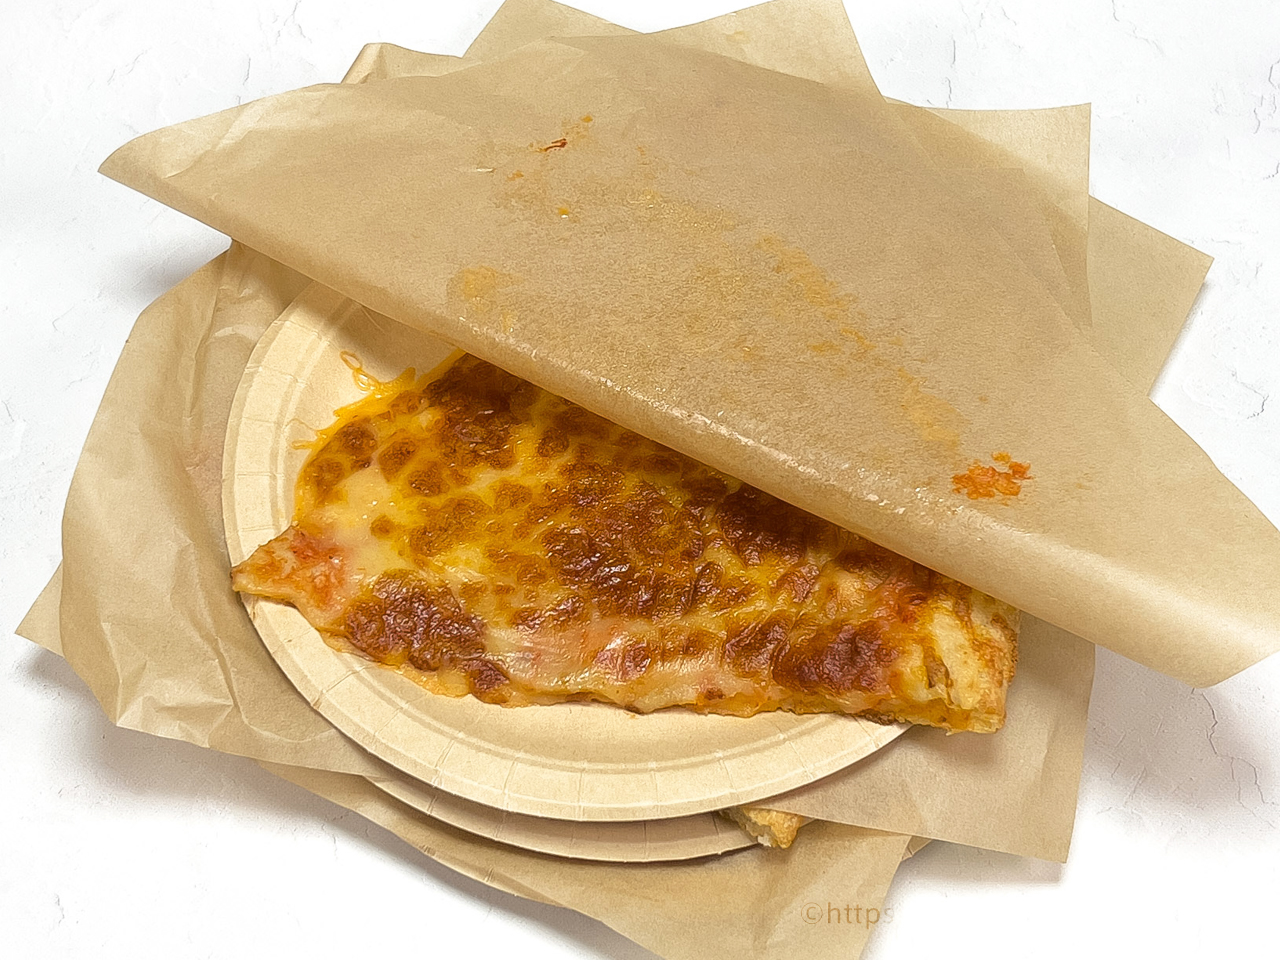 コストコのフードコートでピザが食べられる 購入時の注意点も解説